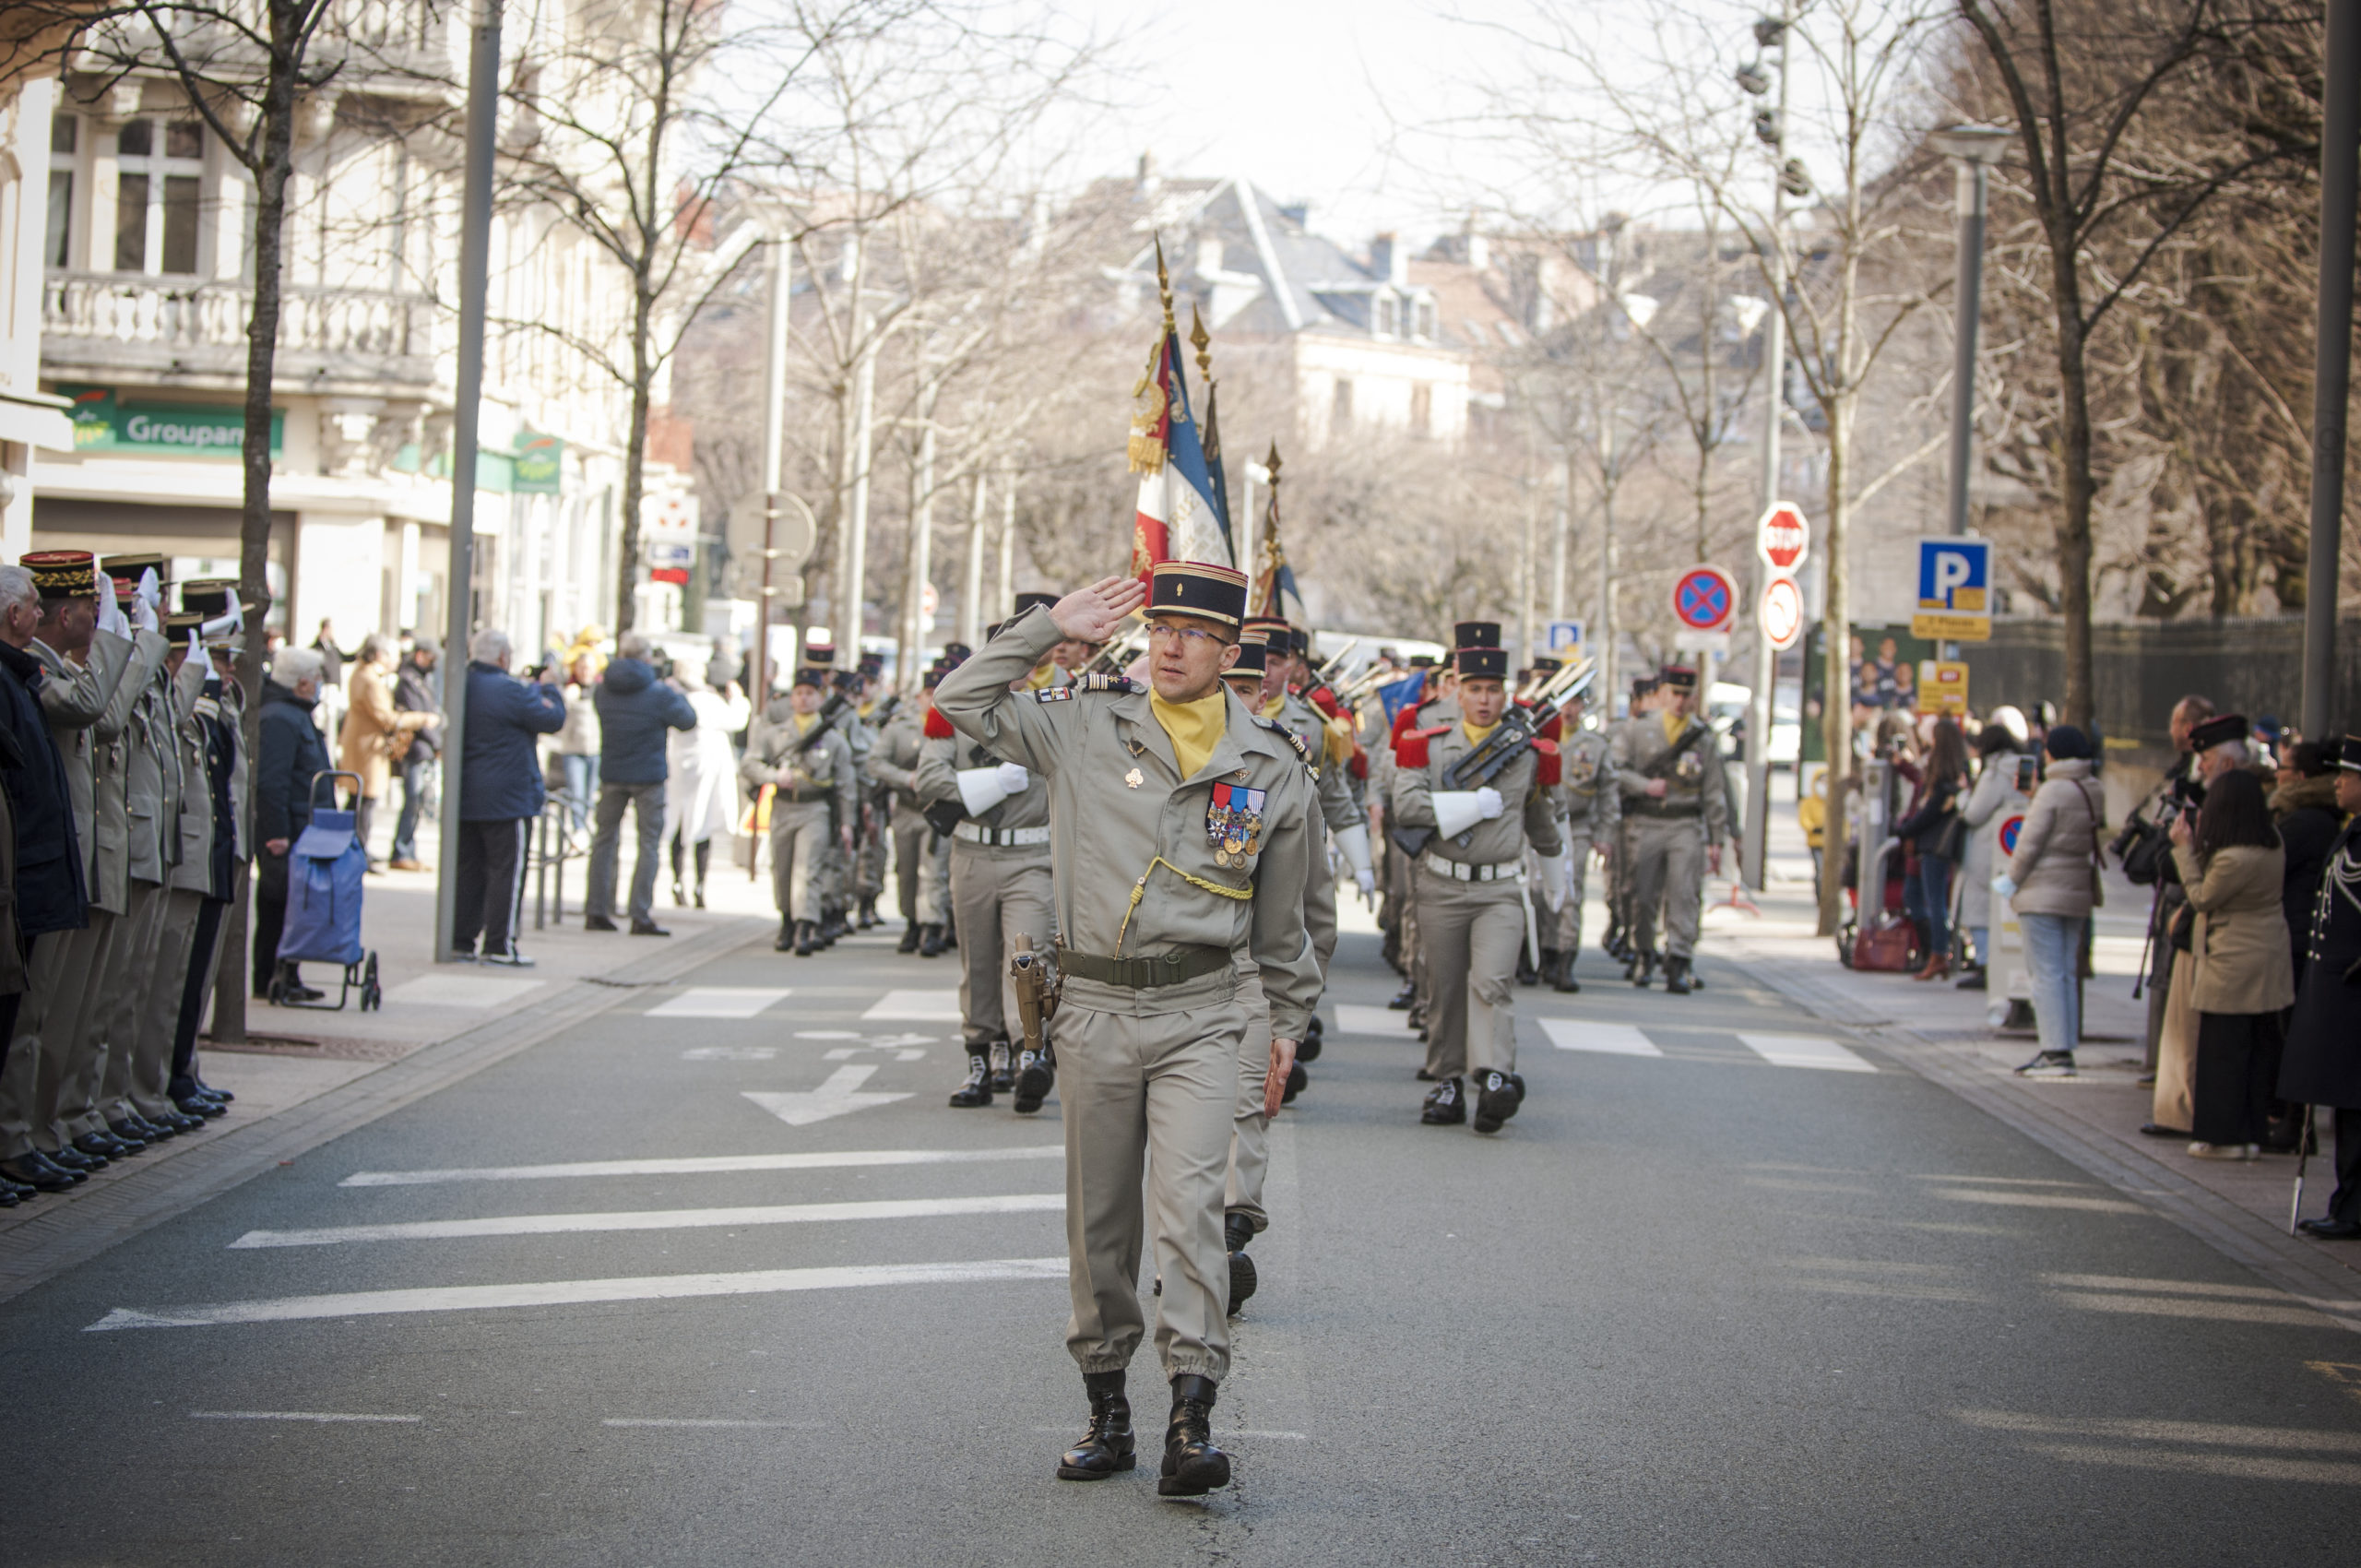 Le 35e régiment d’infanterie célèbre 150 ans de présence à Belfort